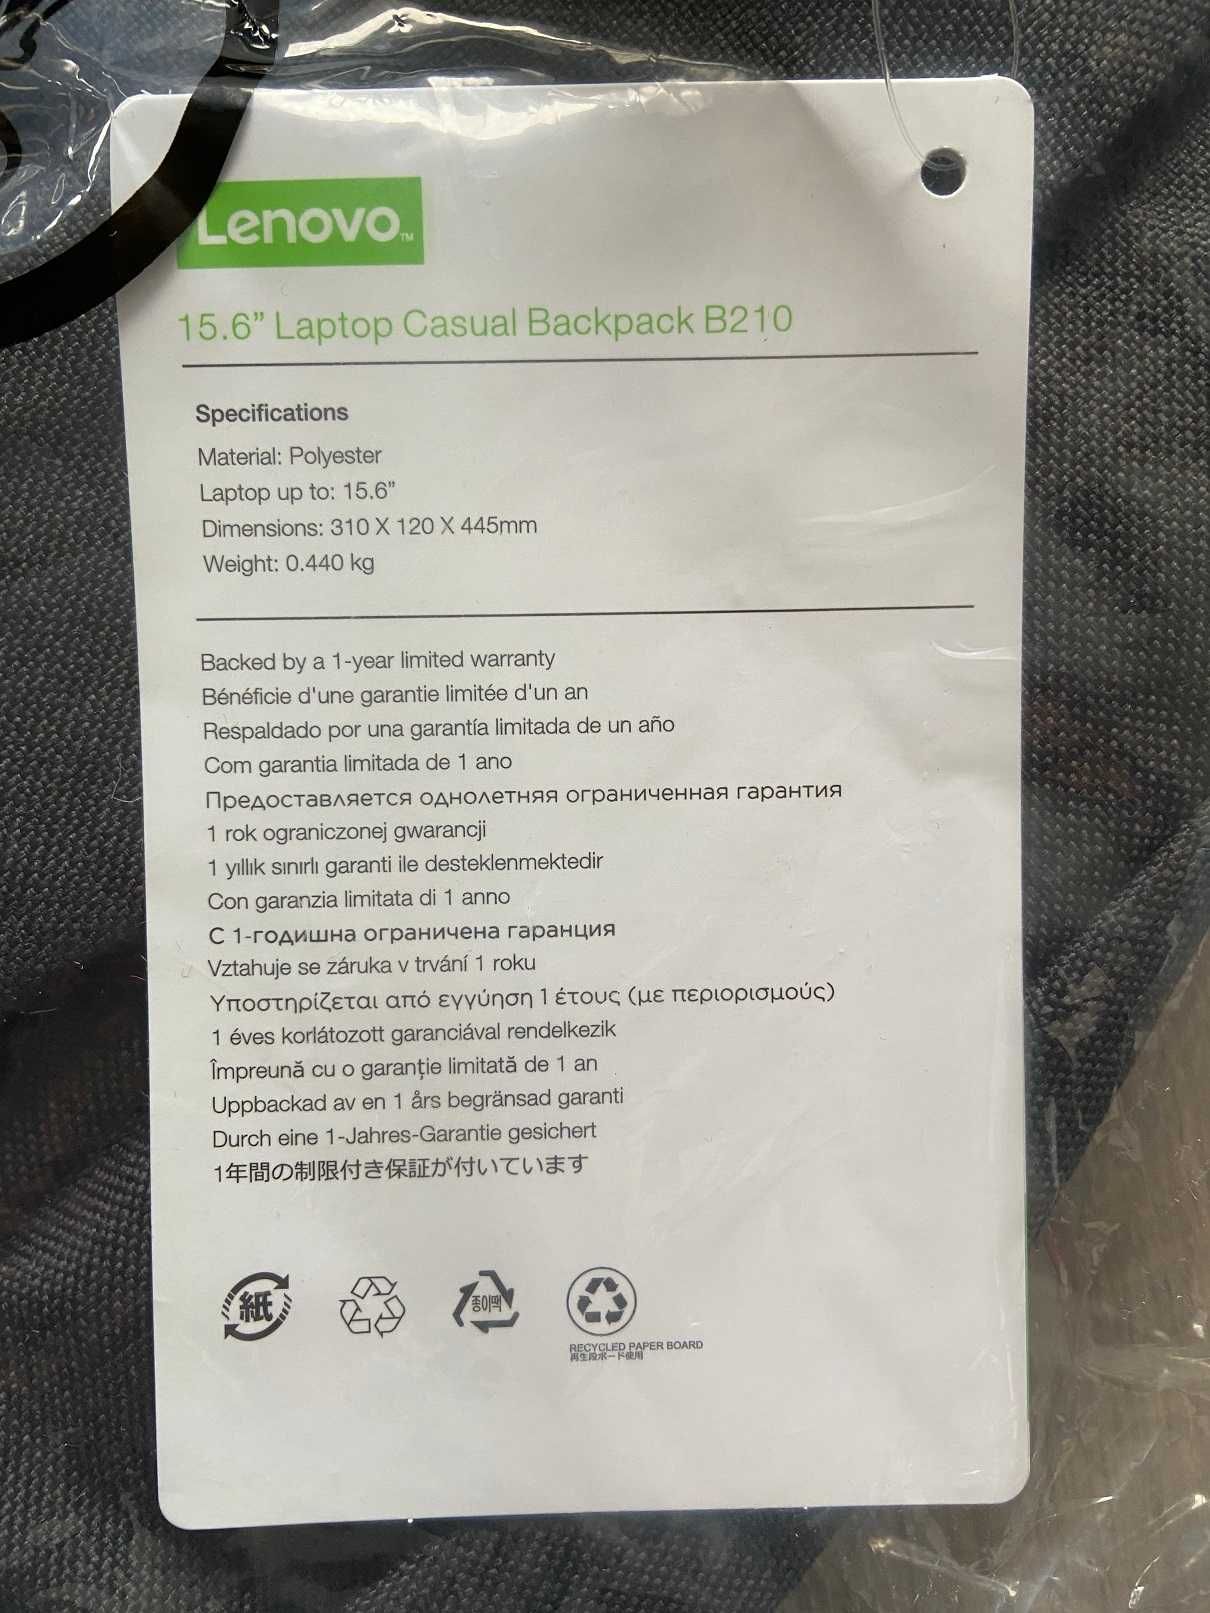 Pecak czarny, Lenovo B210 Casual Backup 15.6"